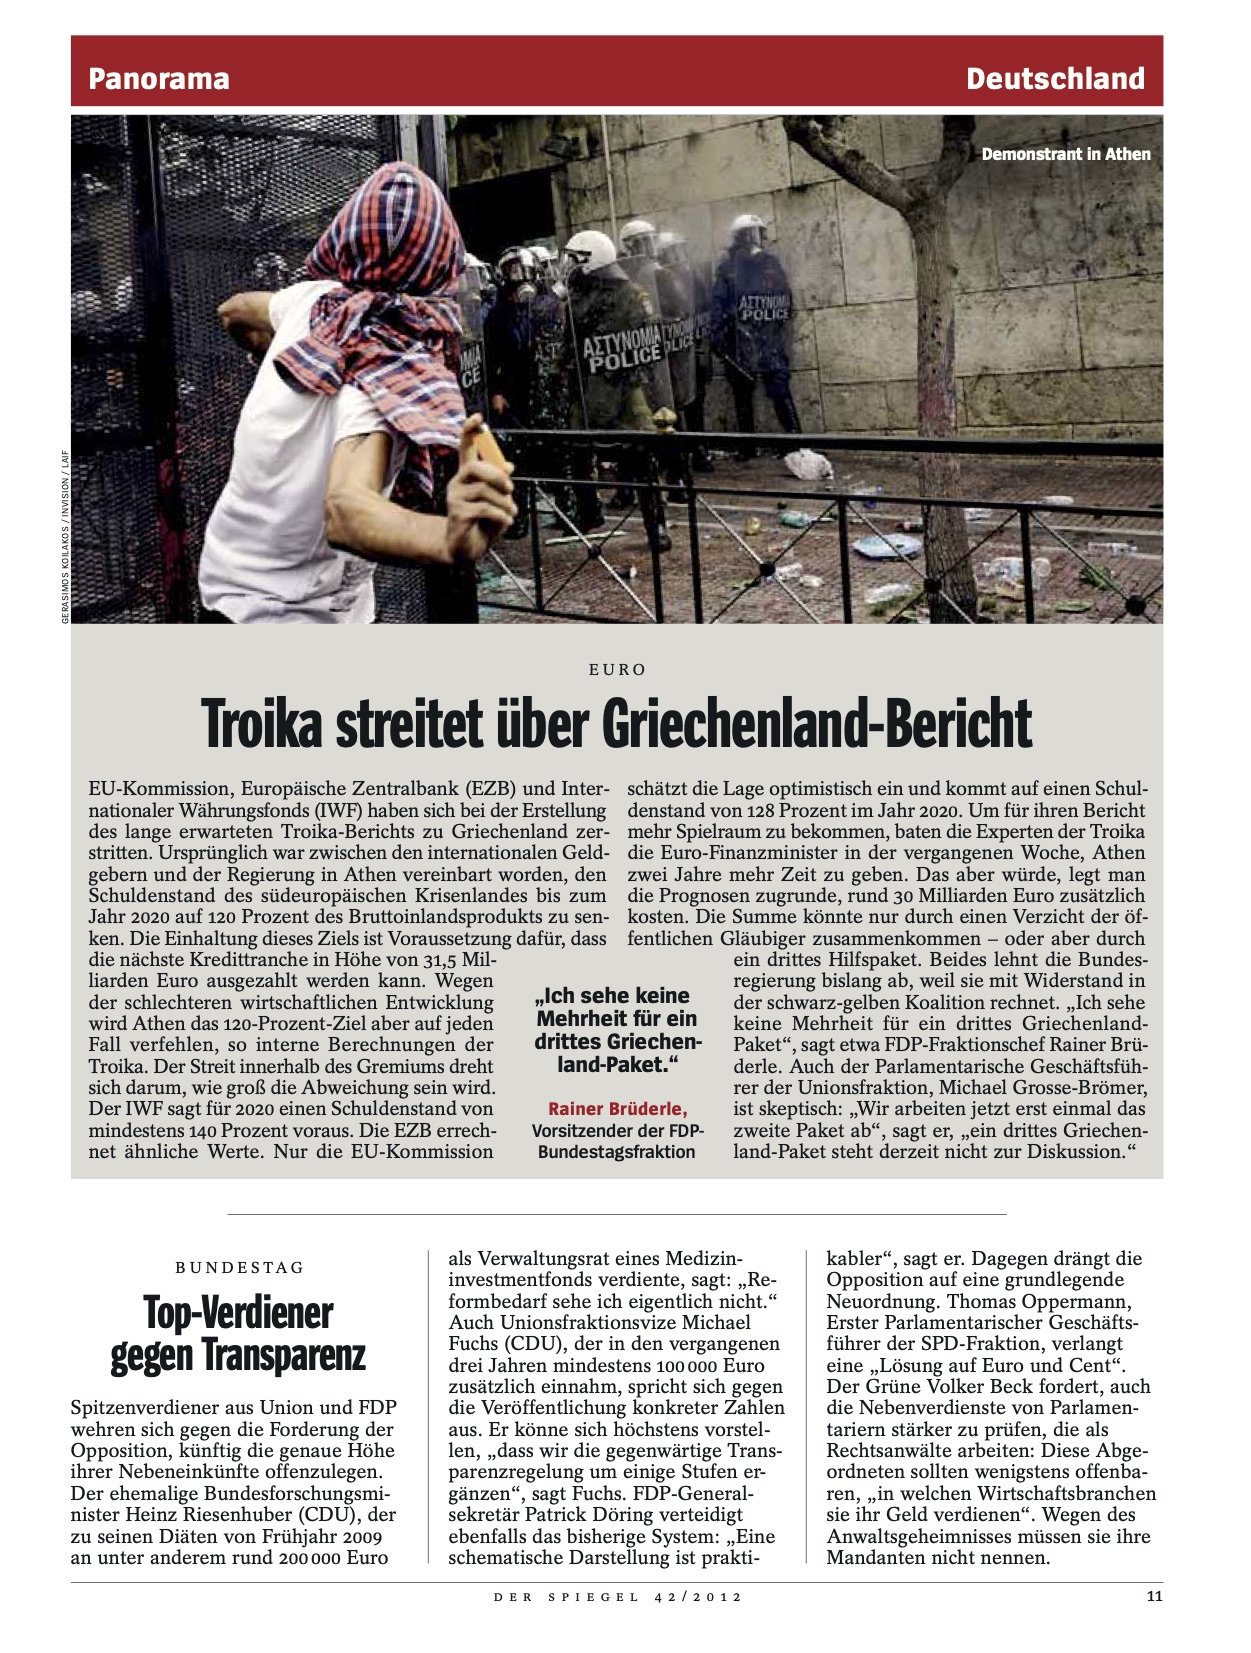 Der Spiegel 2012 42.jpg